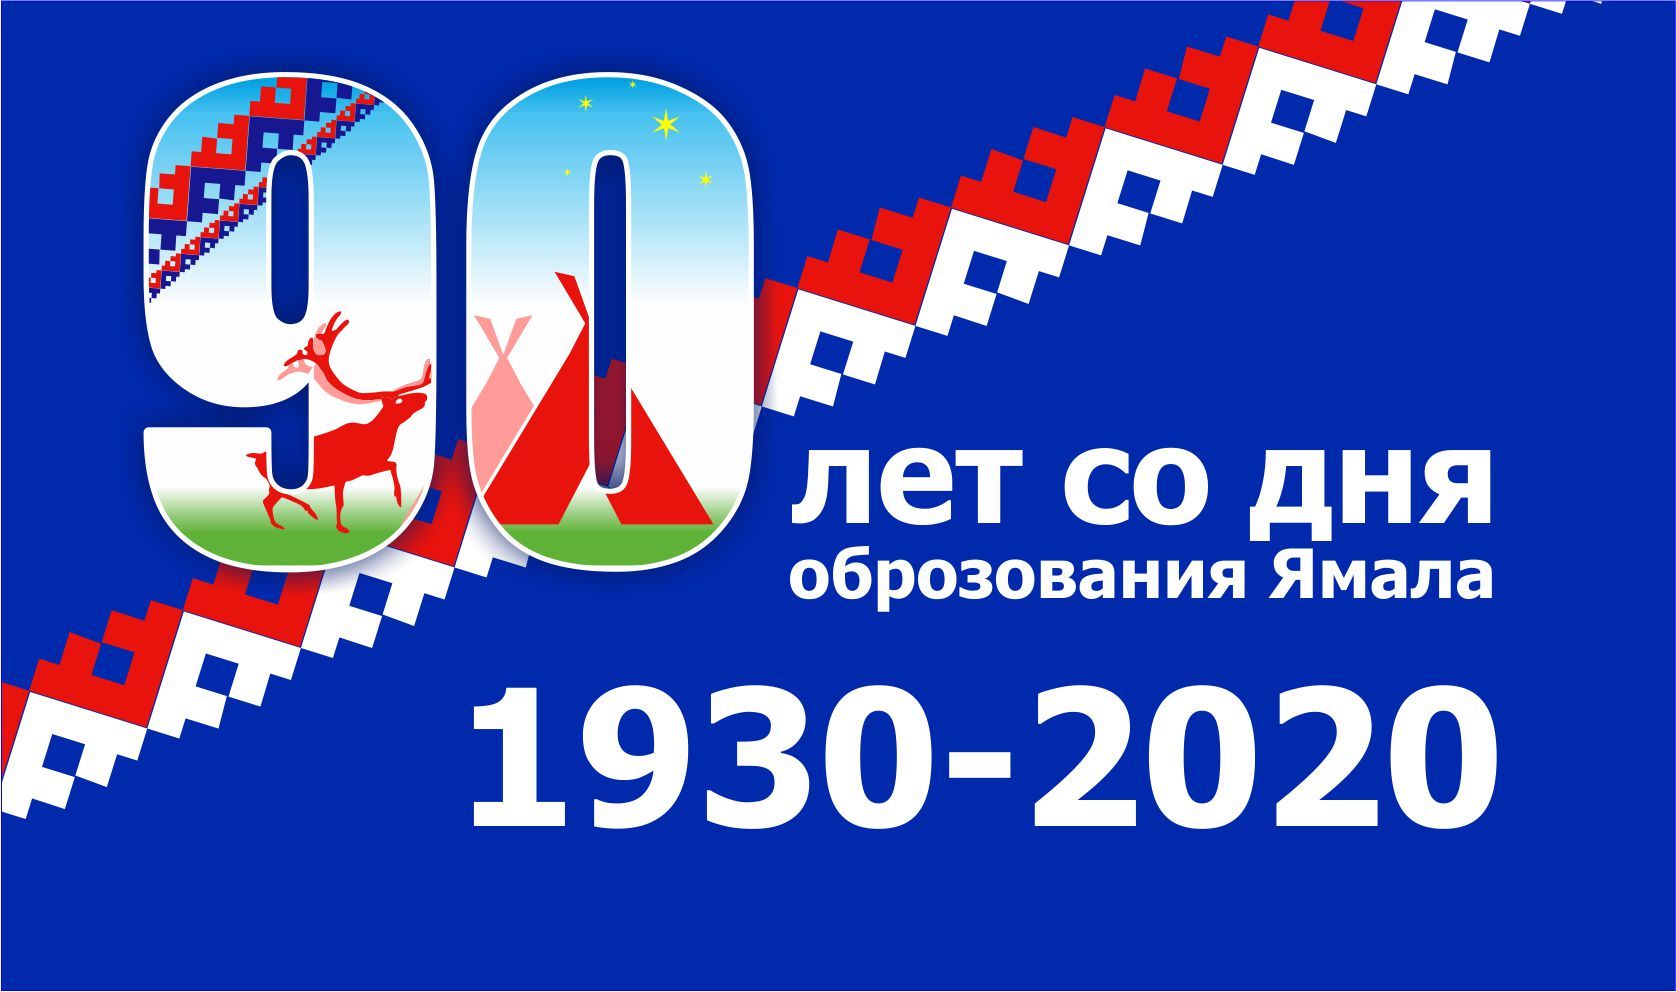 Лого и фирменный стиль для 90-летие со дня образования Ямала - дизайнер art61211